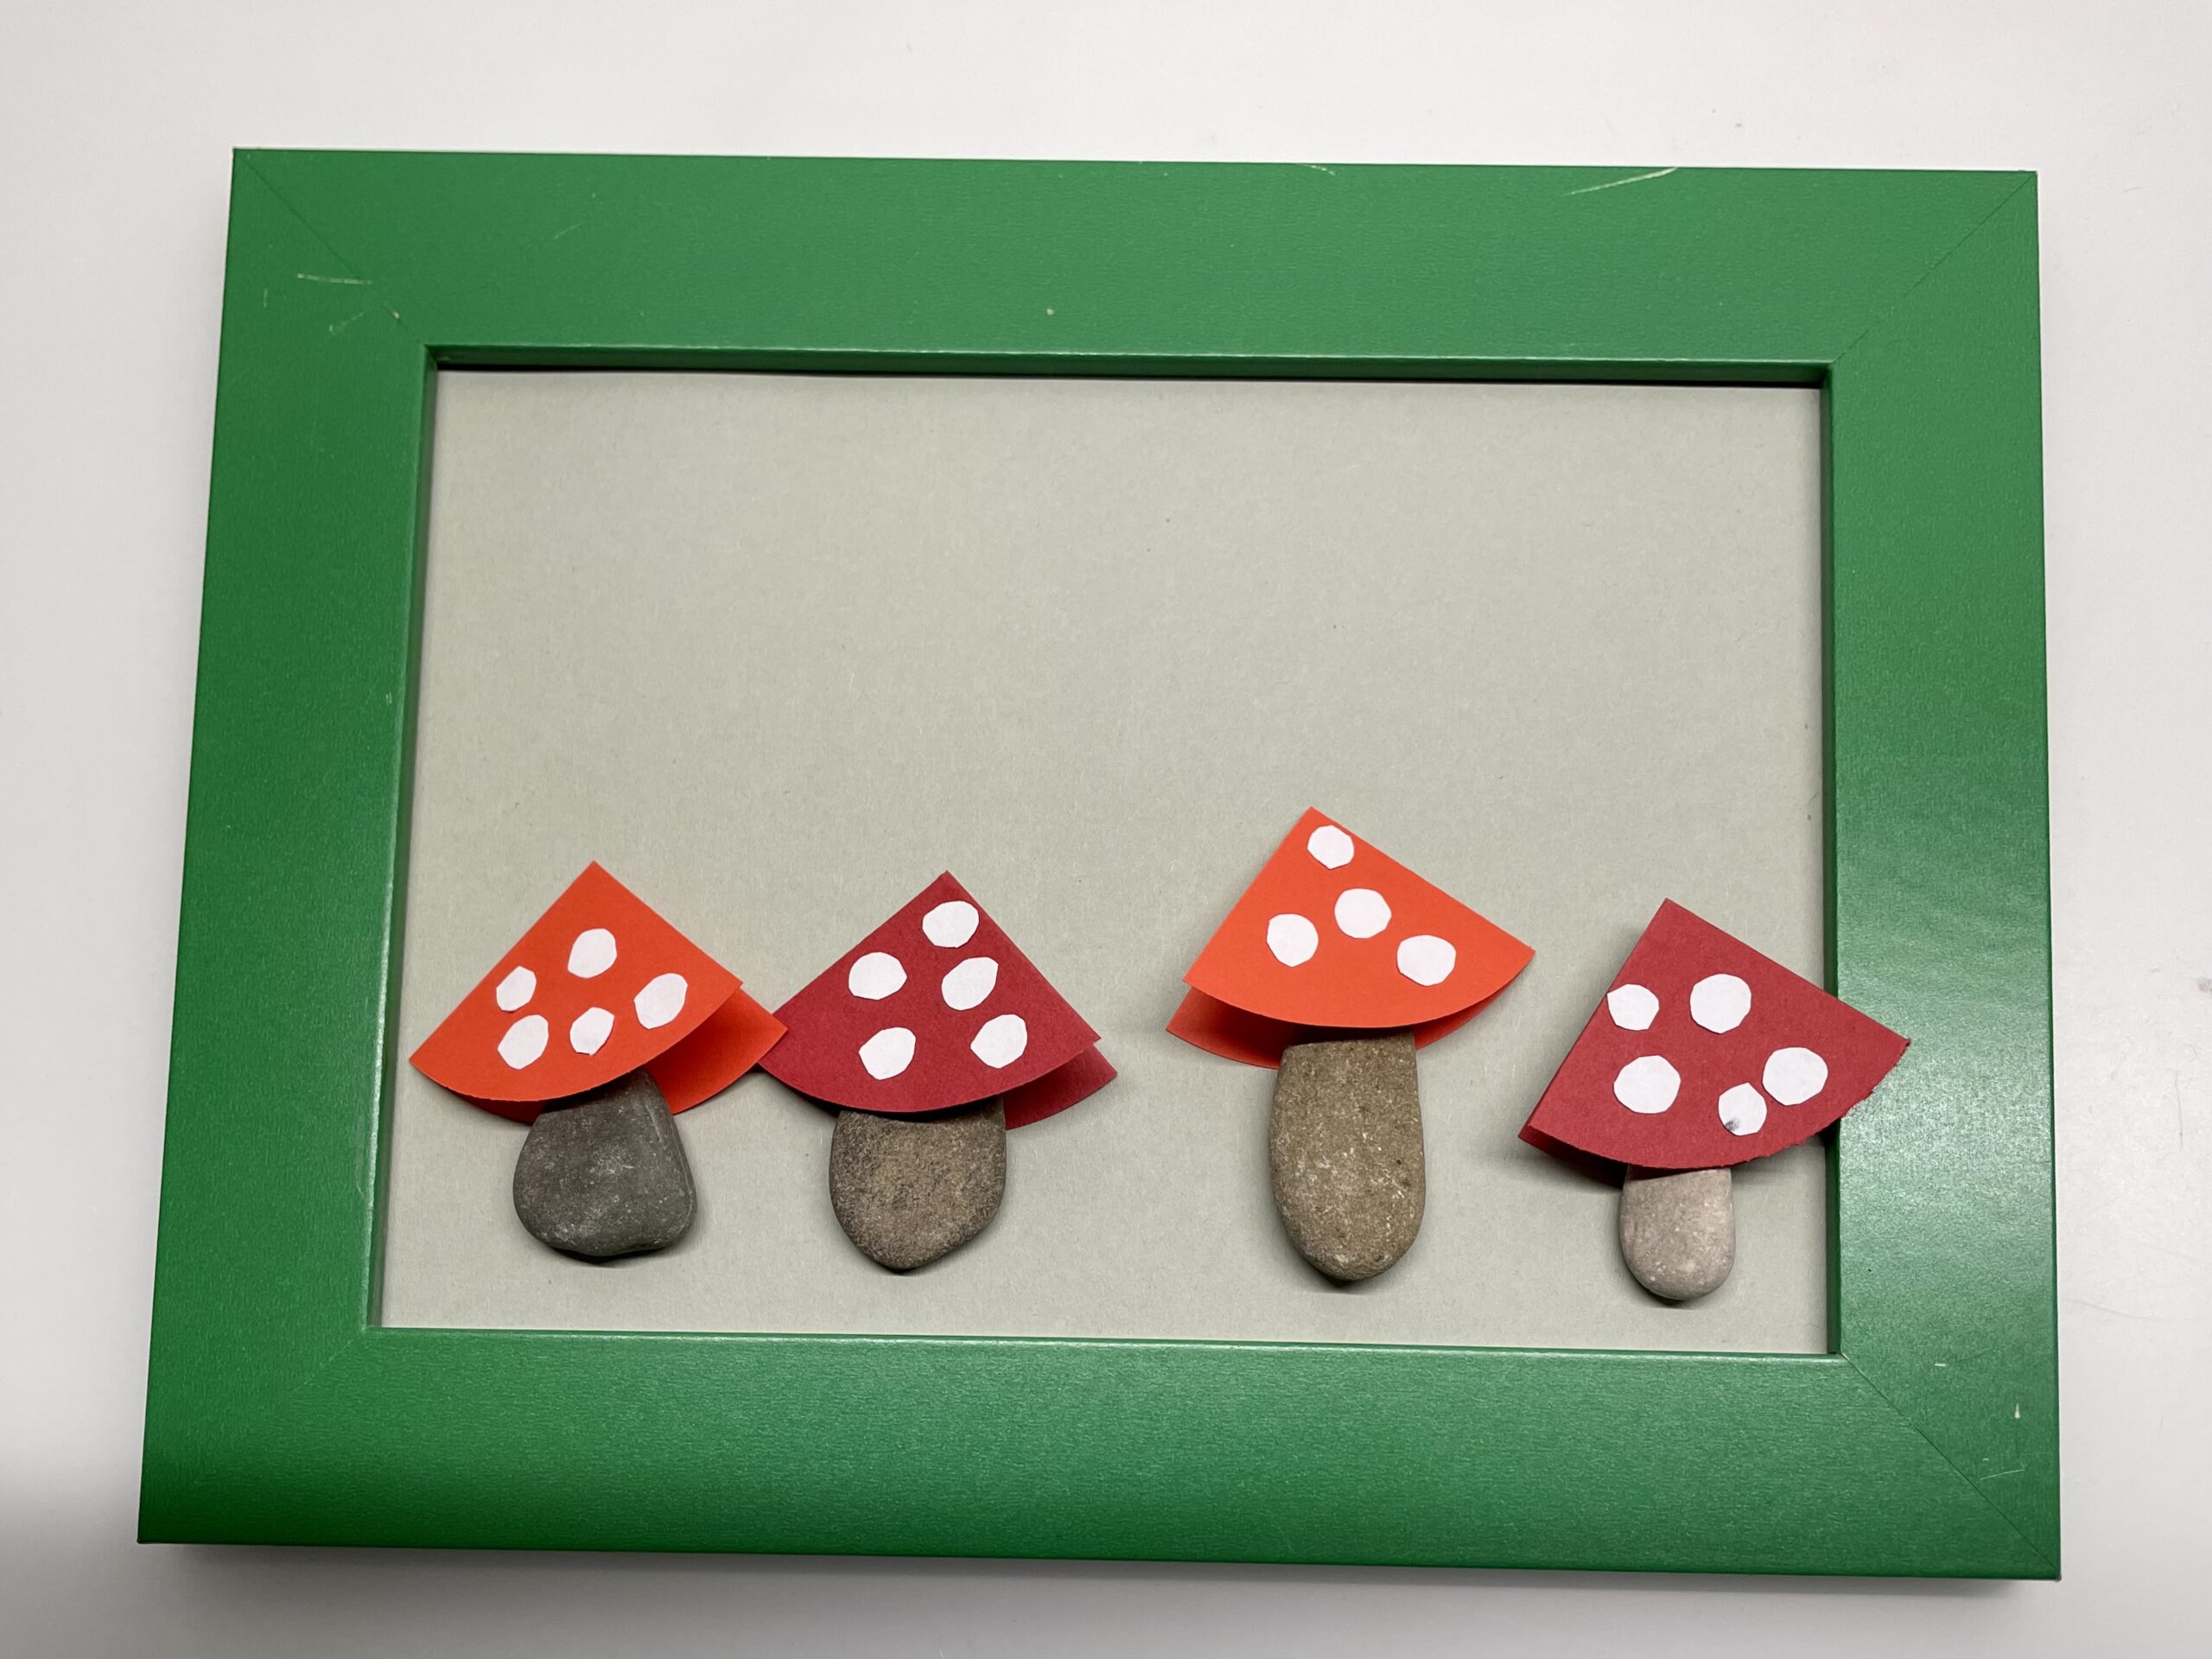 Bild zum Schritt 11 für das Bastel- und DIY-Abenteuer für Kinder: 'Diese Kreise klebt ihr als Punkte auf die Pilze. Es...'